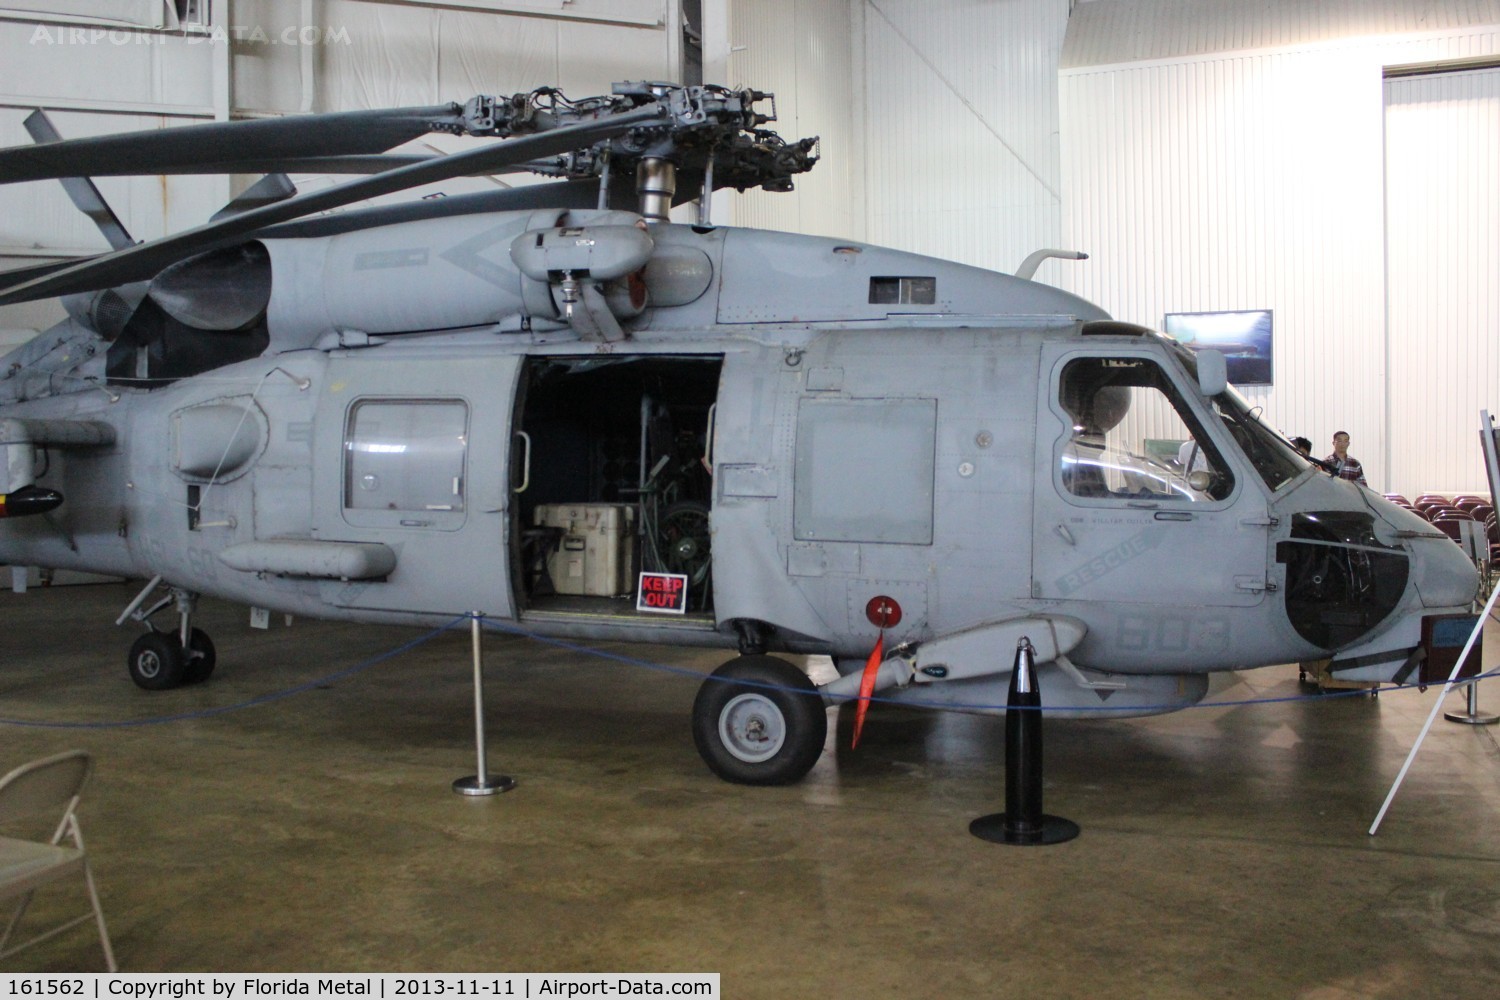 161562, Sikorsky SH-60B Seahawk C/N 70-0373, SH-60B Seahawk at Battleship Alabama